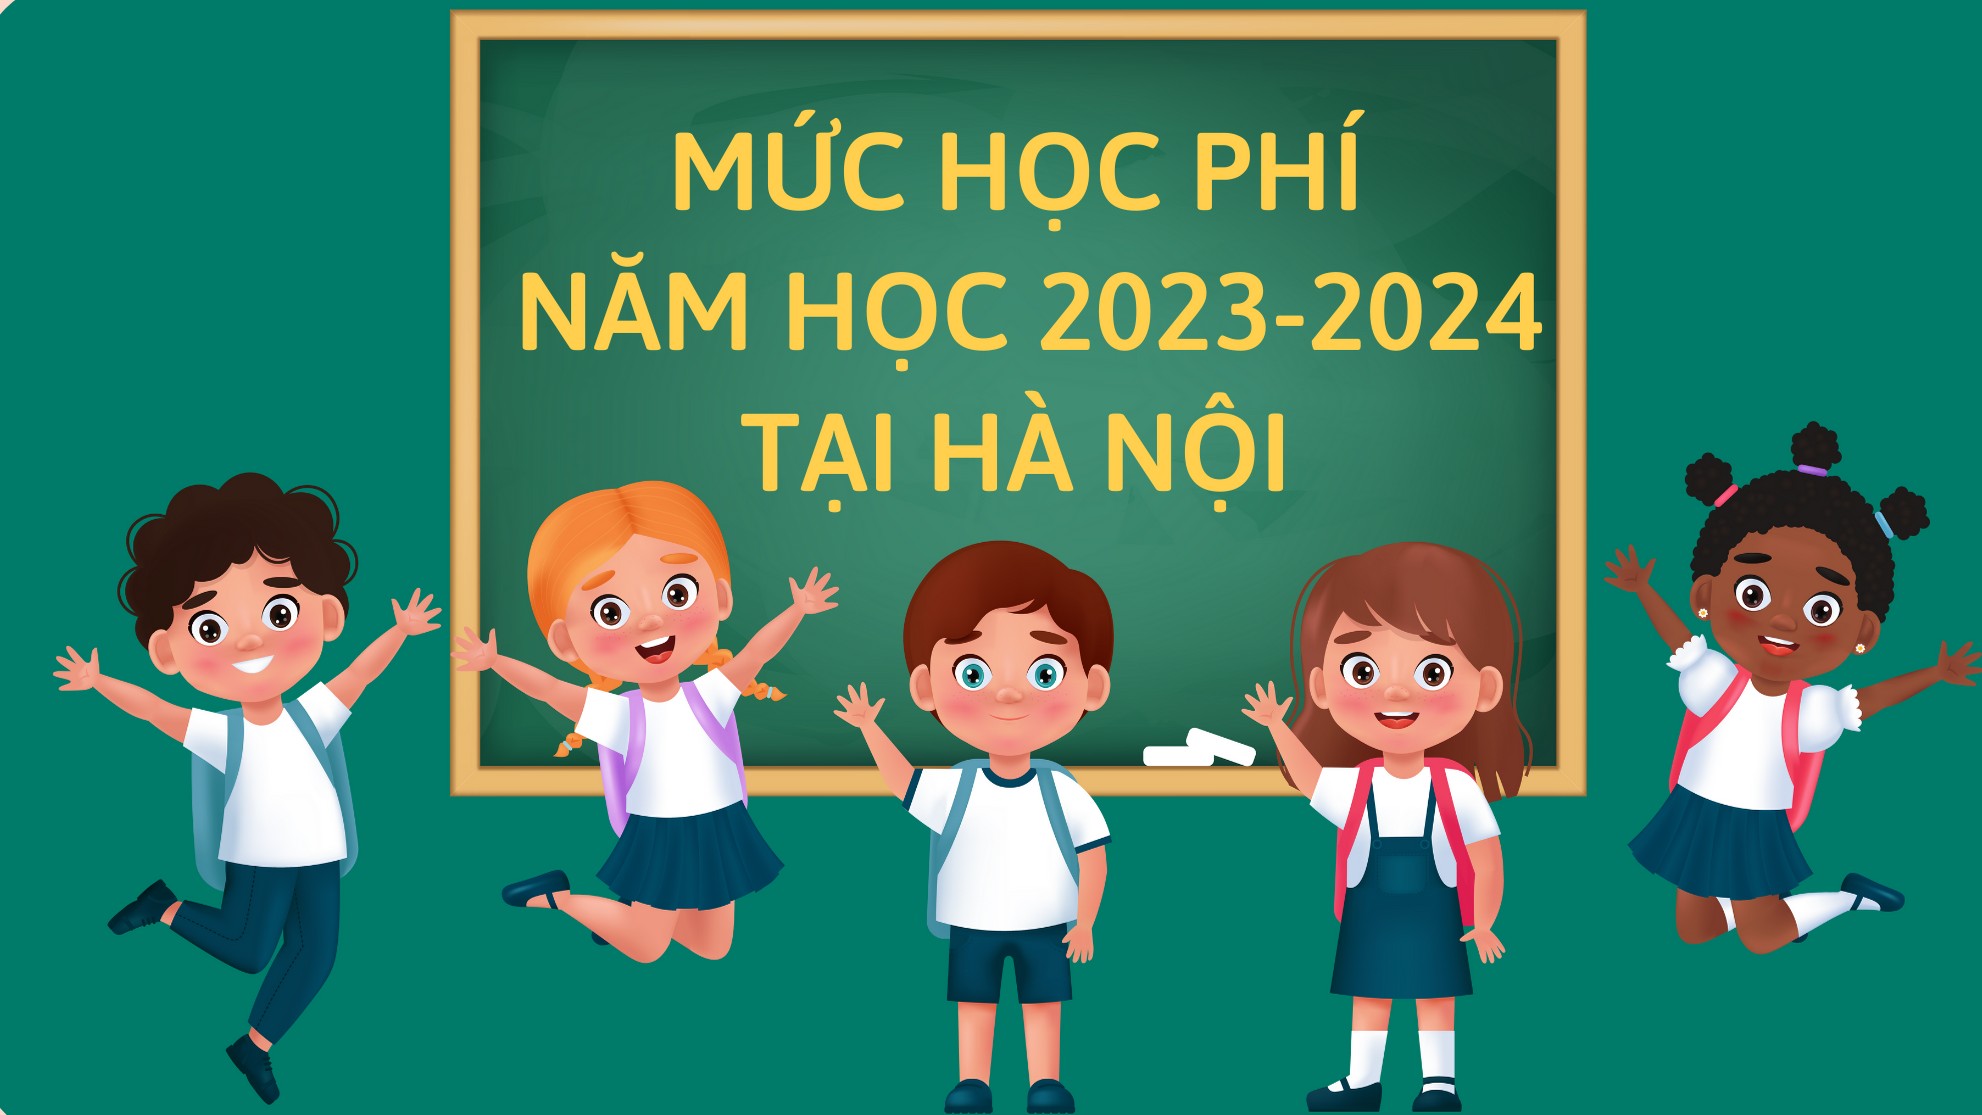 Mức học phí năm học 2023 - 2024 tại Hà Nội